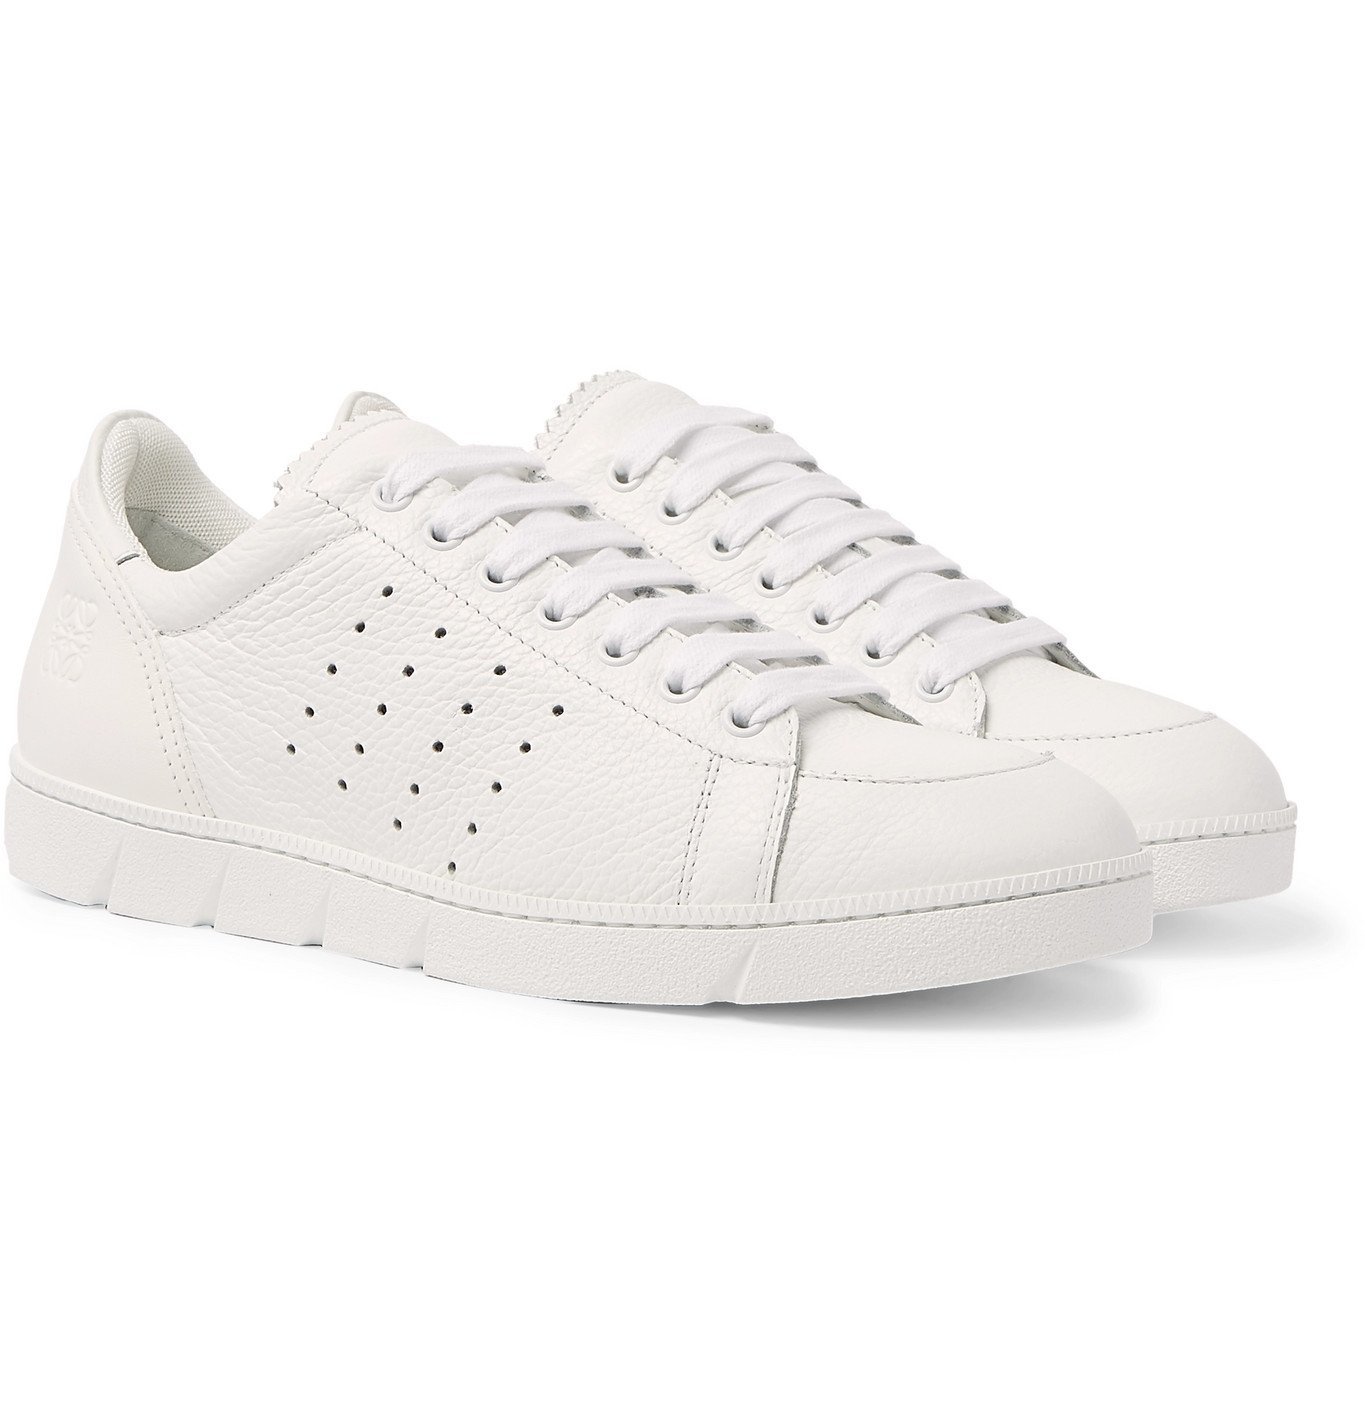 Loewe - Smooth and Full-Grain Leather Sneakers - White Loewe